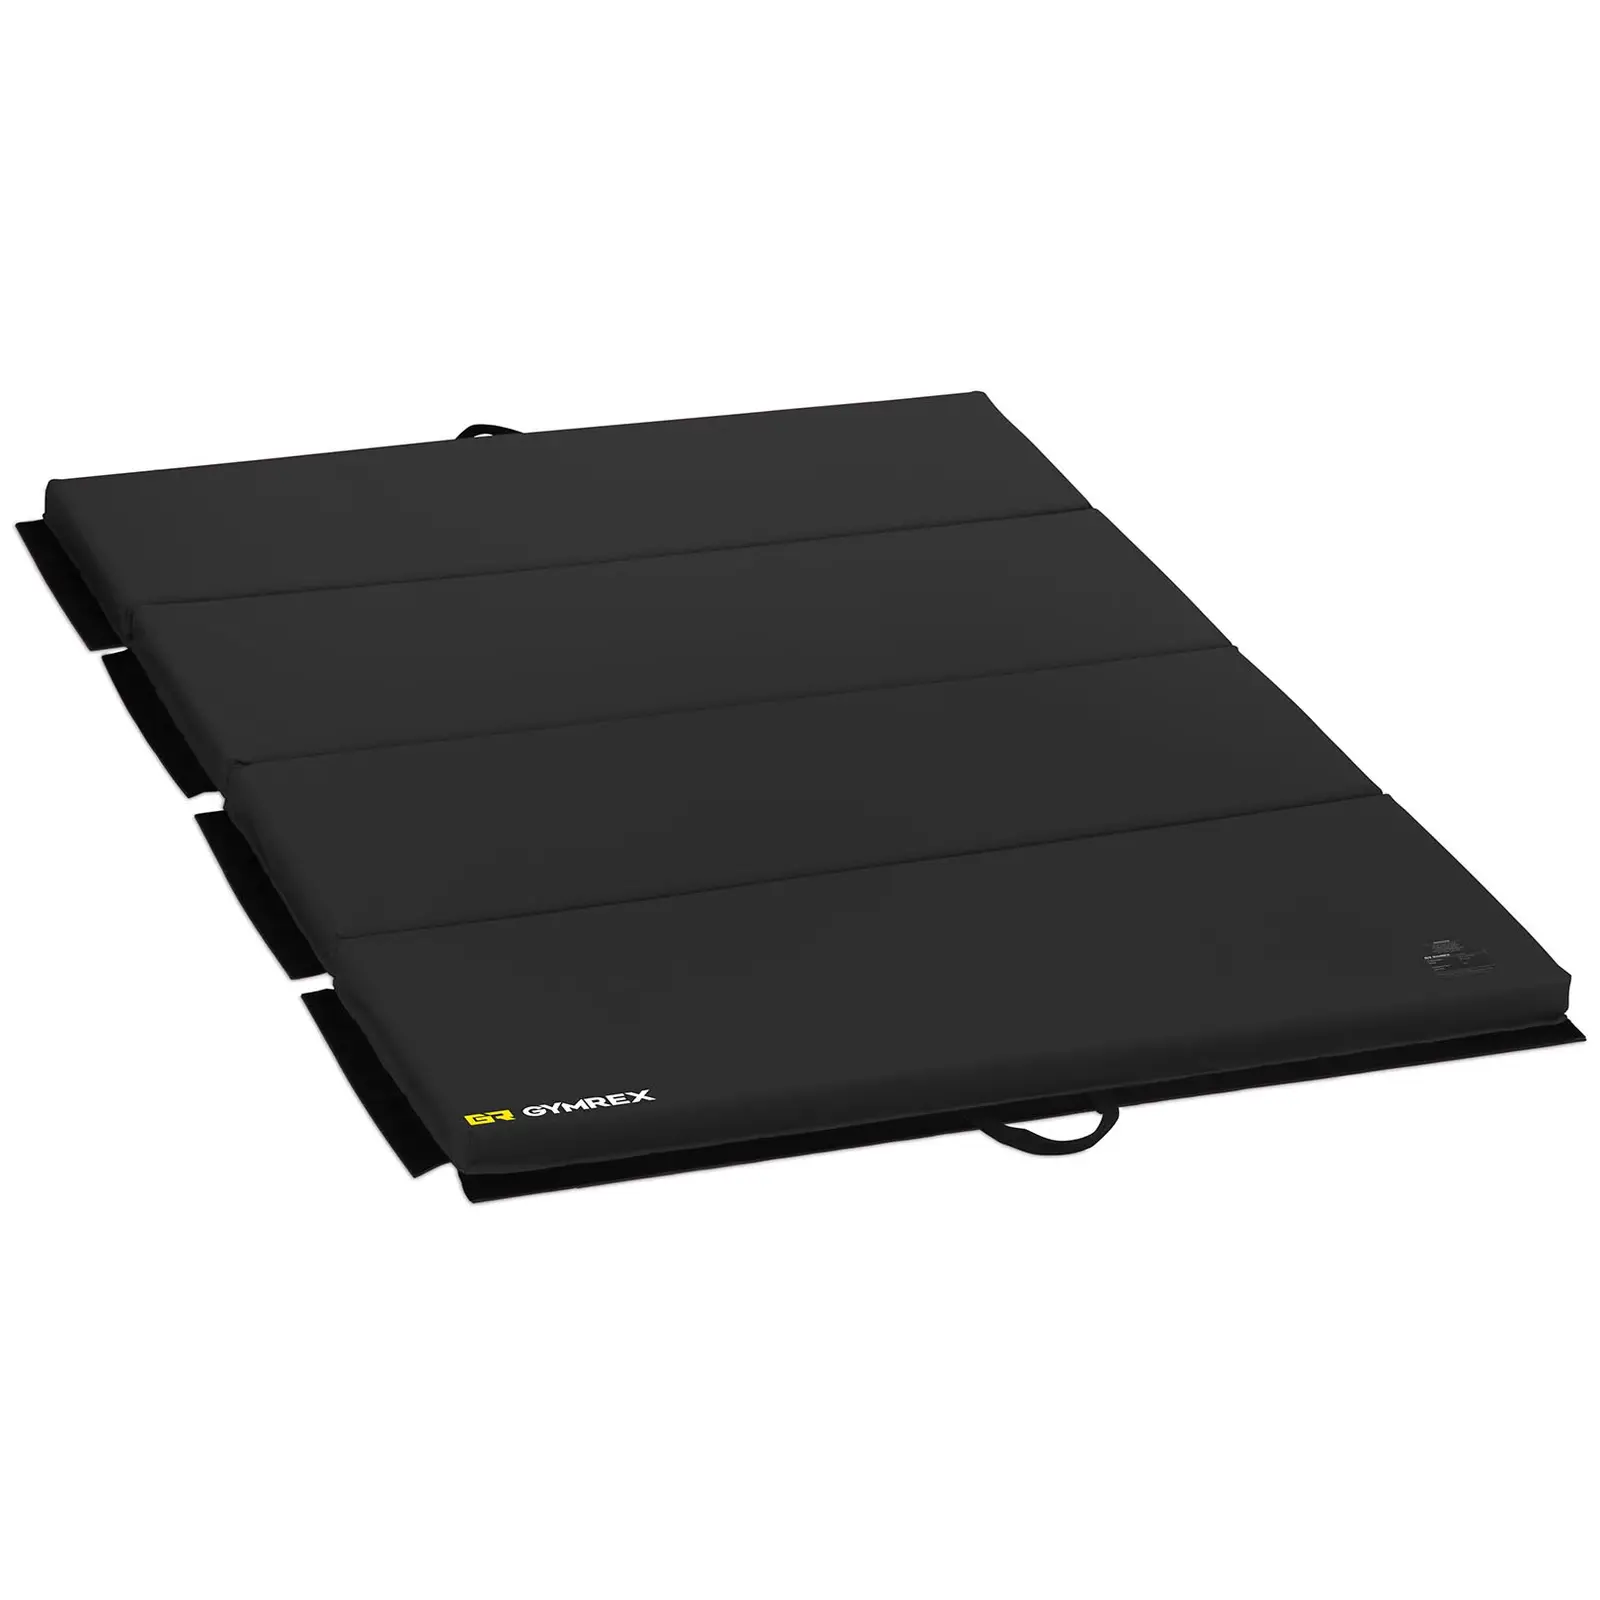 Gimnastikos kilimėlis - 200 x 120 x 5 cm - sulankstomas - juodas - keliamoji galia iki 170 kg